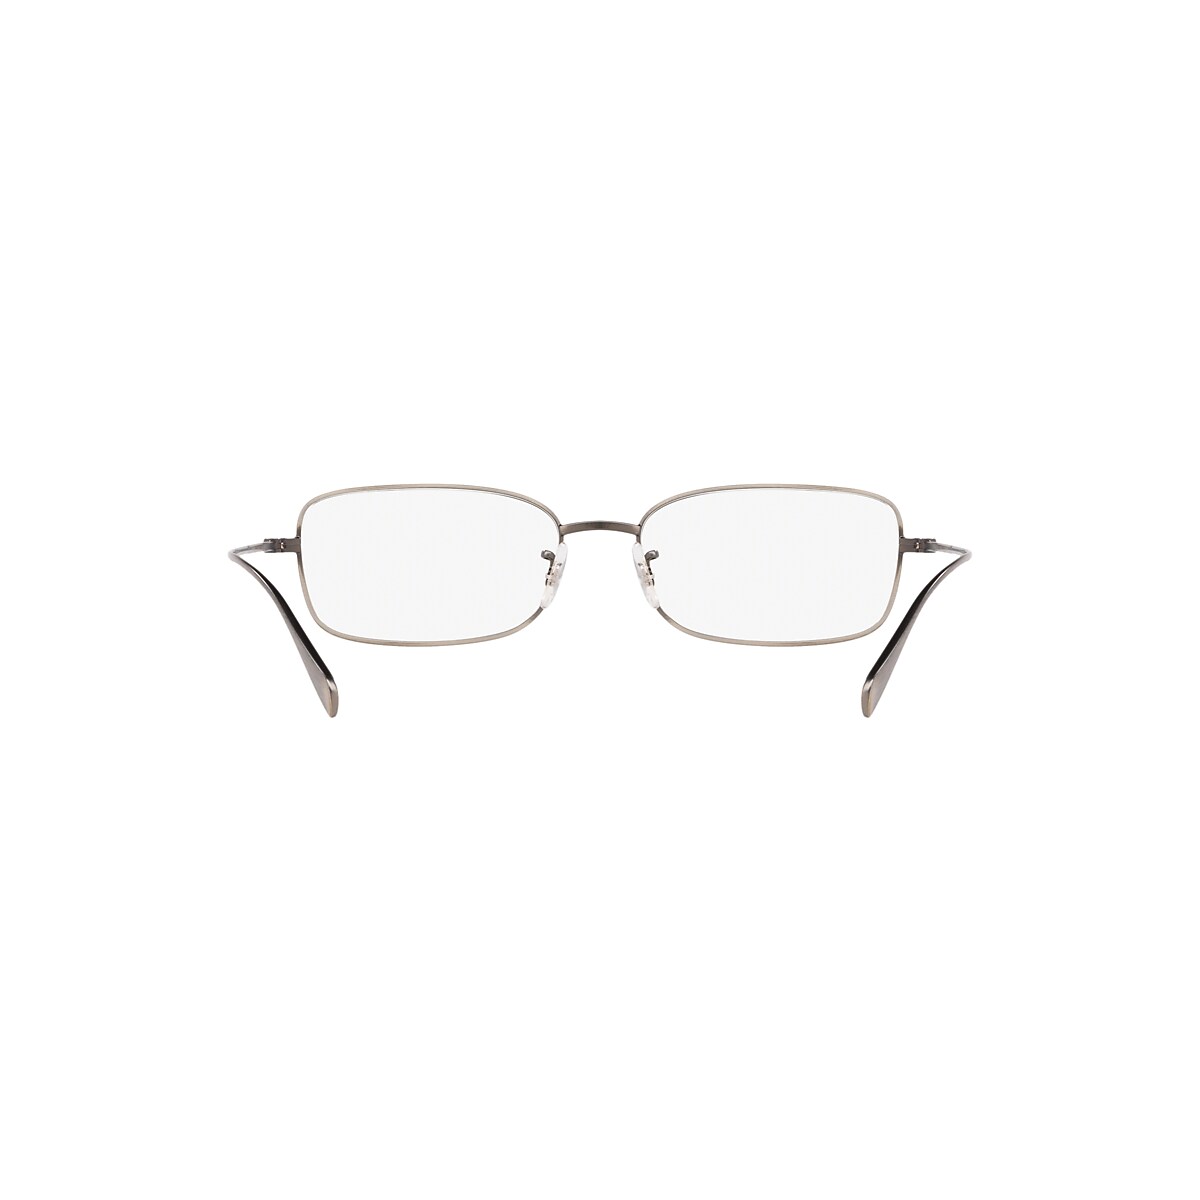 OV1253 Eyeglasses New Antique Pewter | Oliver Peoples USA